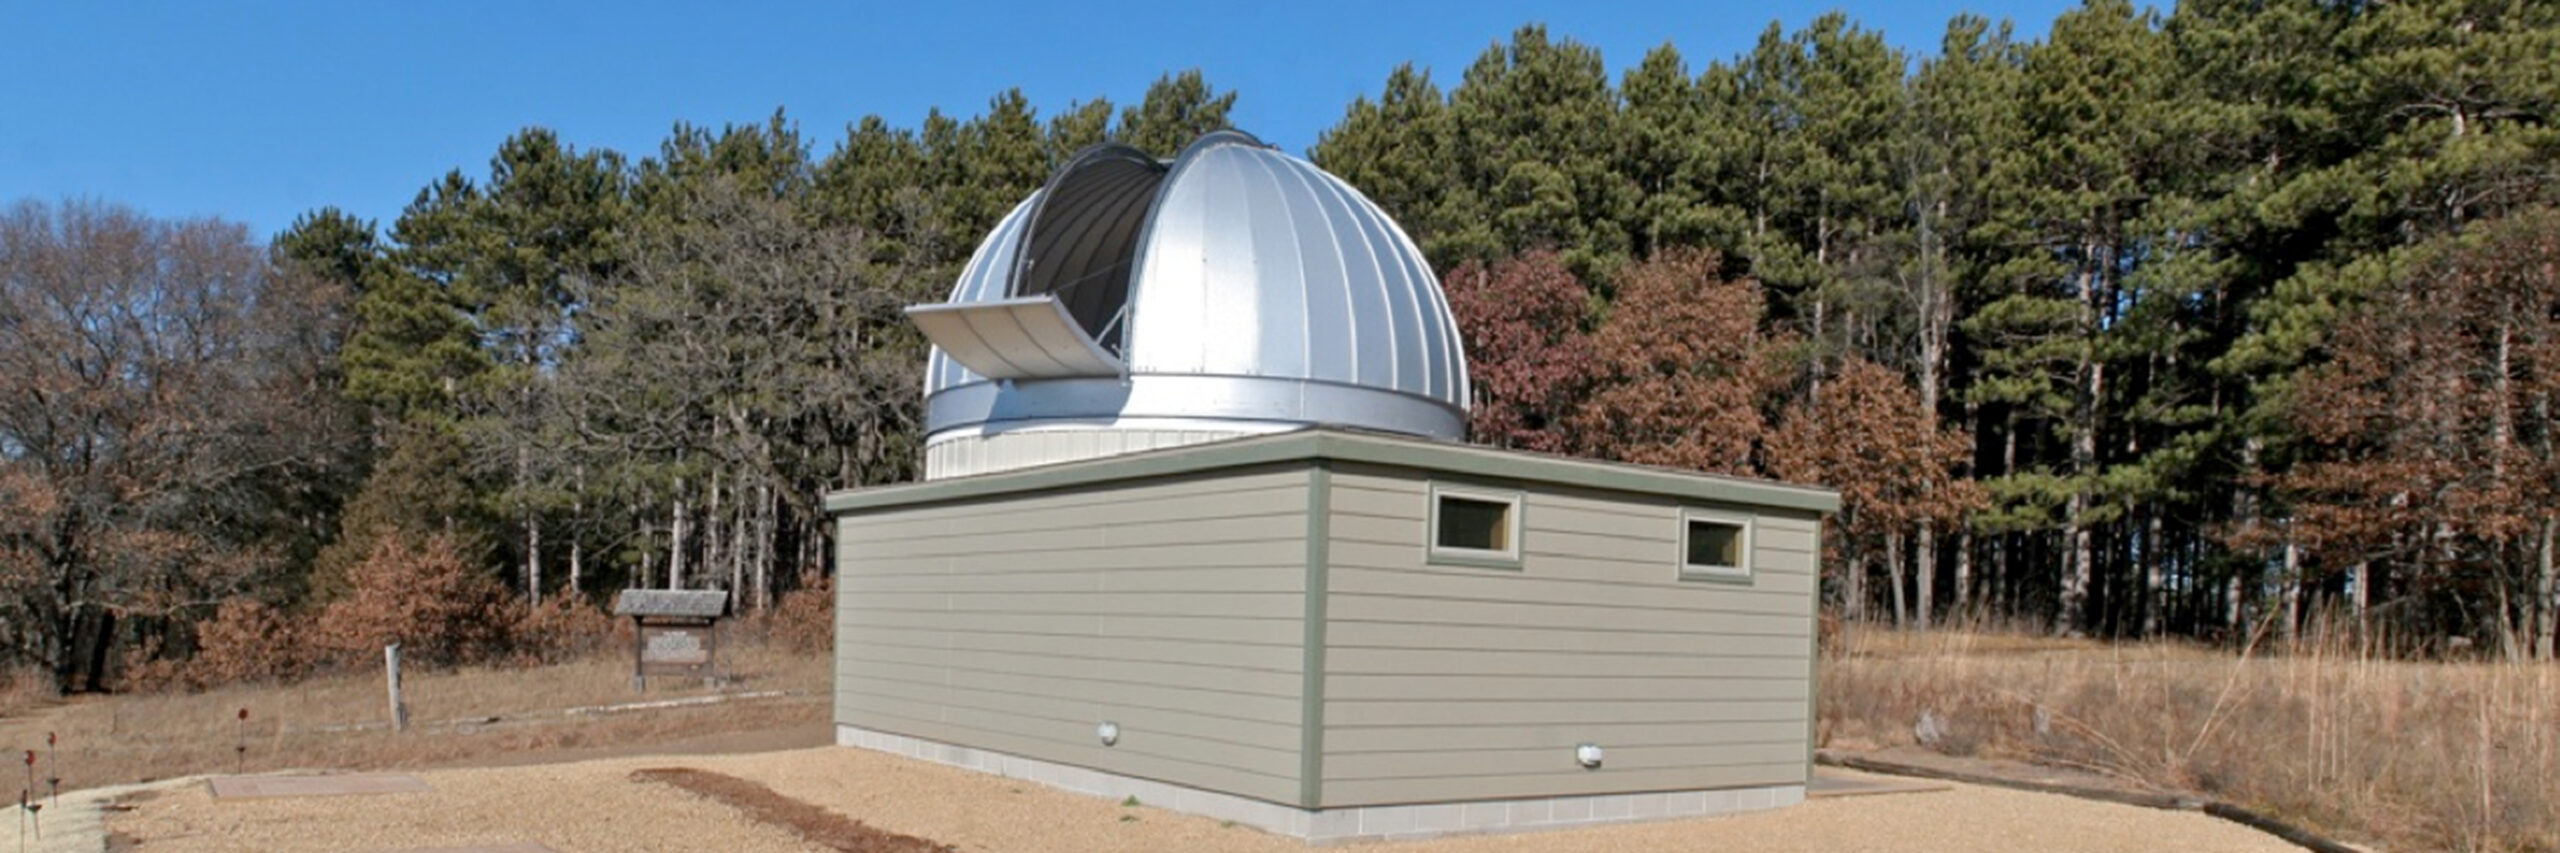 Joseph J. Casby Observatory